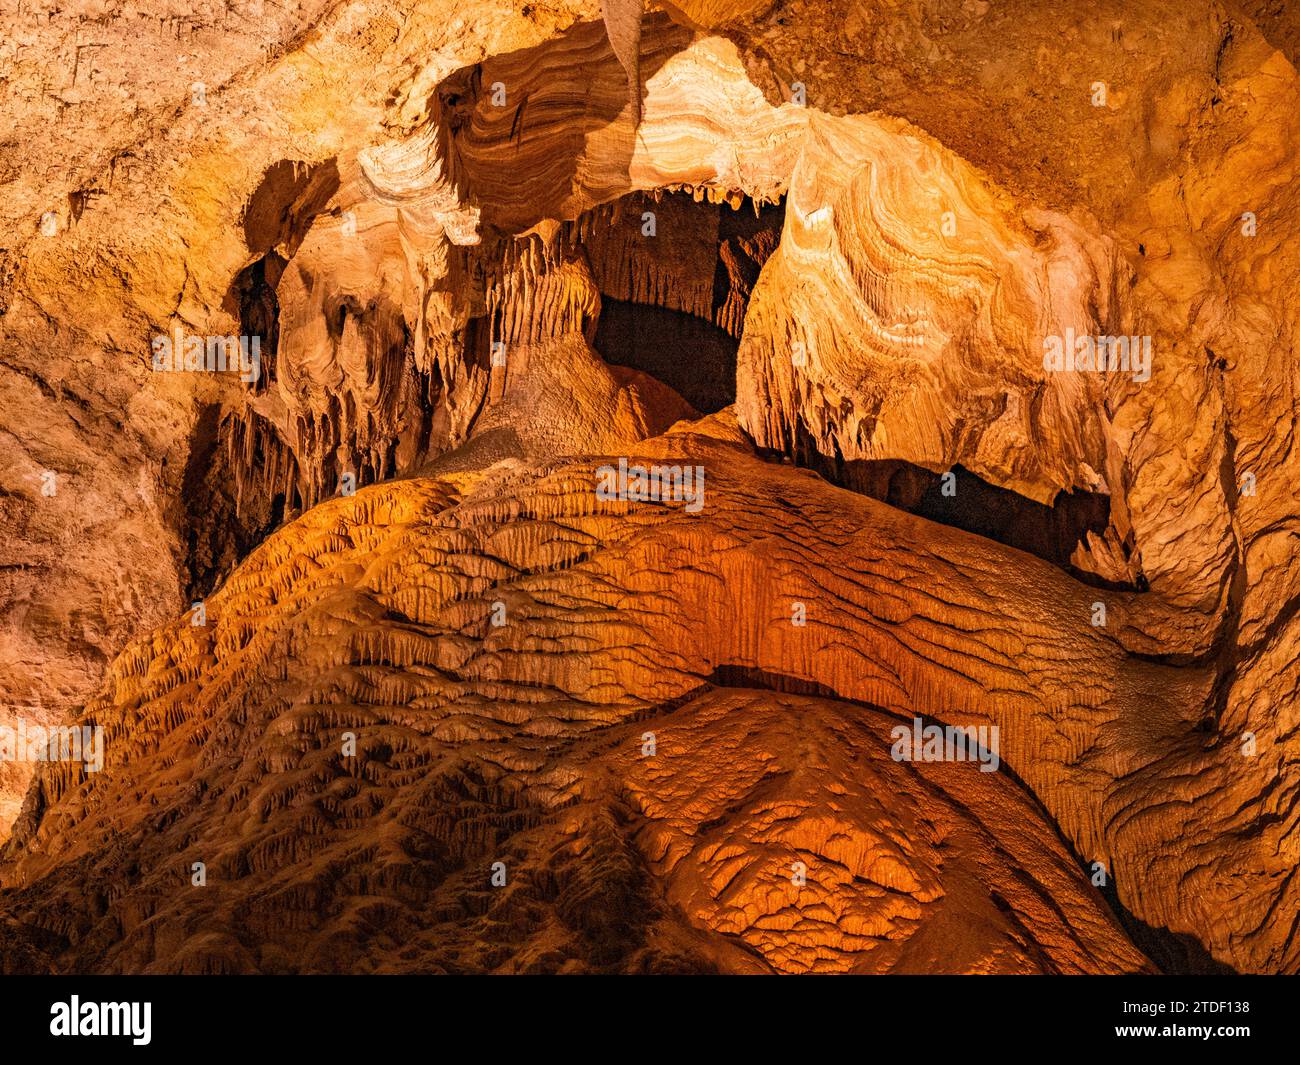 Immergiti nella grotta principale del Carlsbad Caverns National Park, sito patrimonio dell'umanità dell'UNESCO, situato nelle montagne Guadalupe, New Mexico Foto Stock